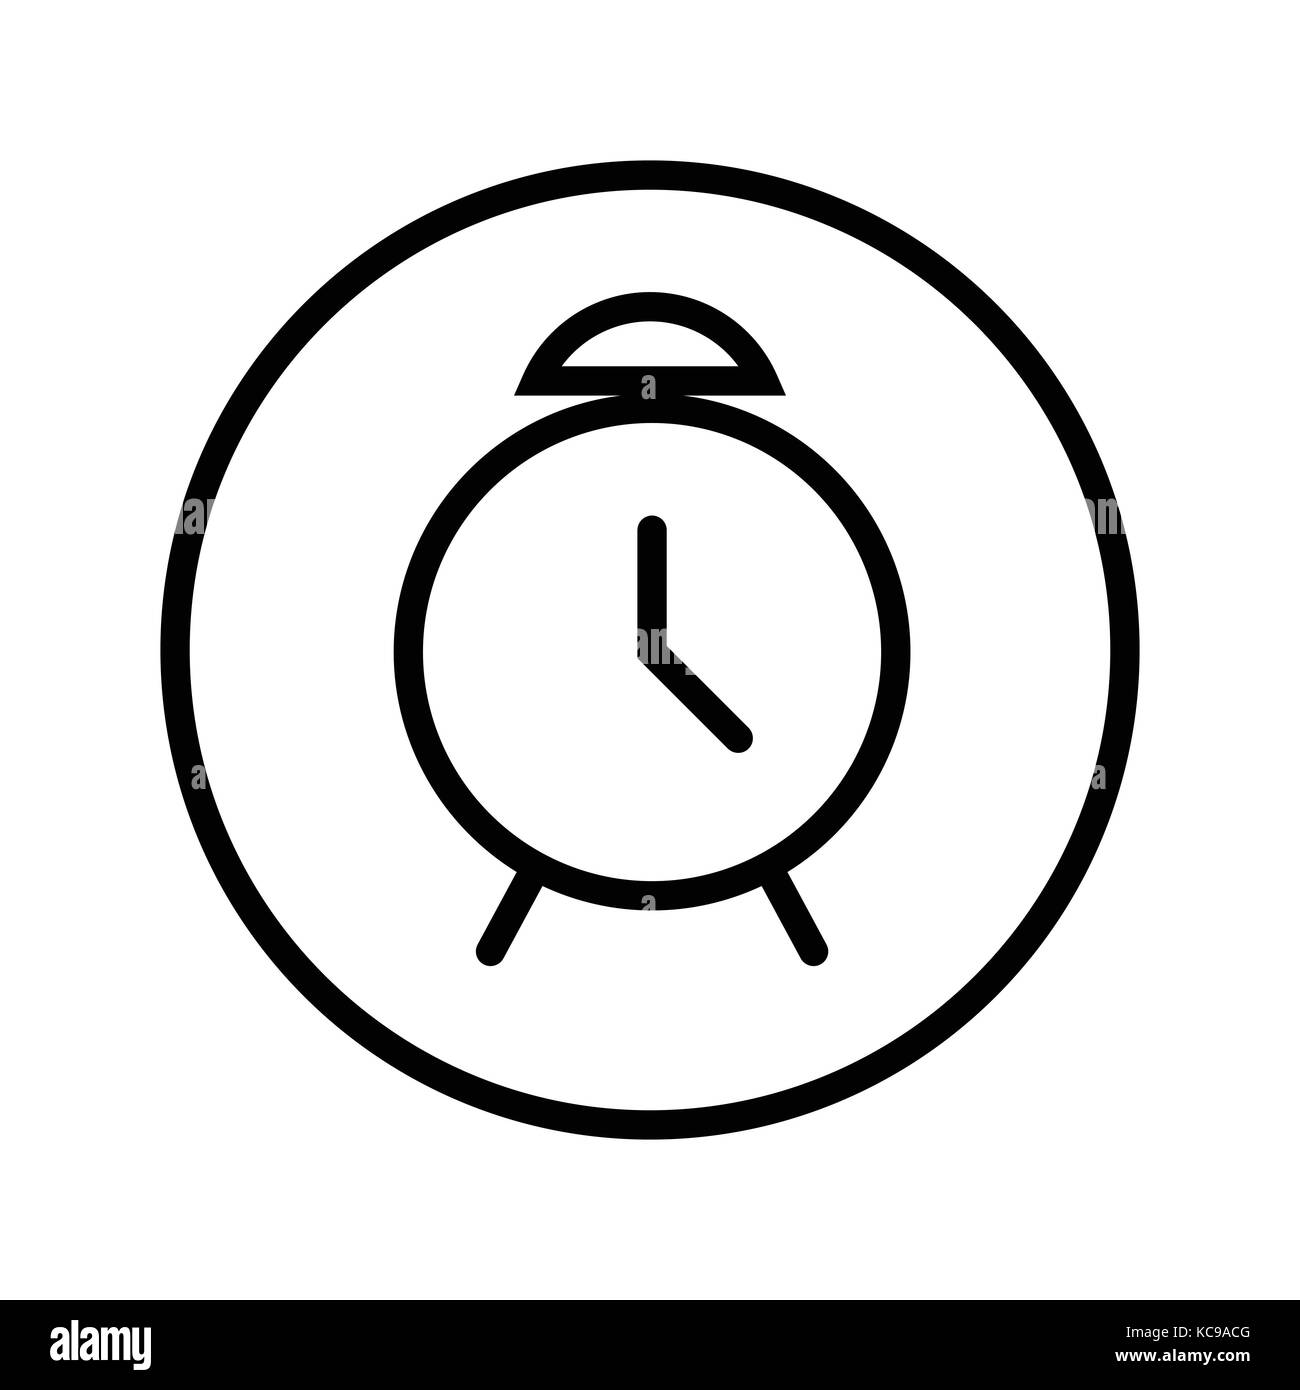 Vecteur de l'icône d'alarme en ligne circle, symbole iconique dans un cercle, sur fond blanc. vector design iconique. Illustration de Vecteur